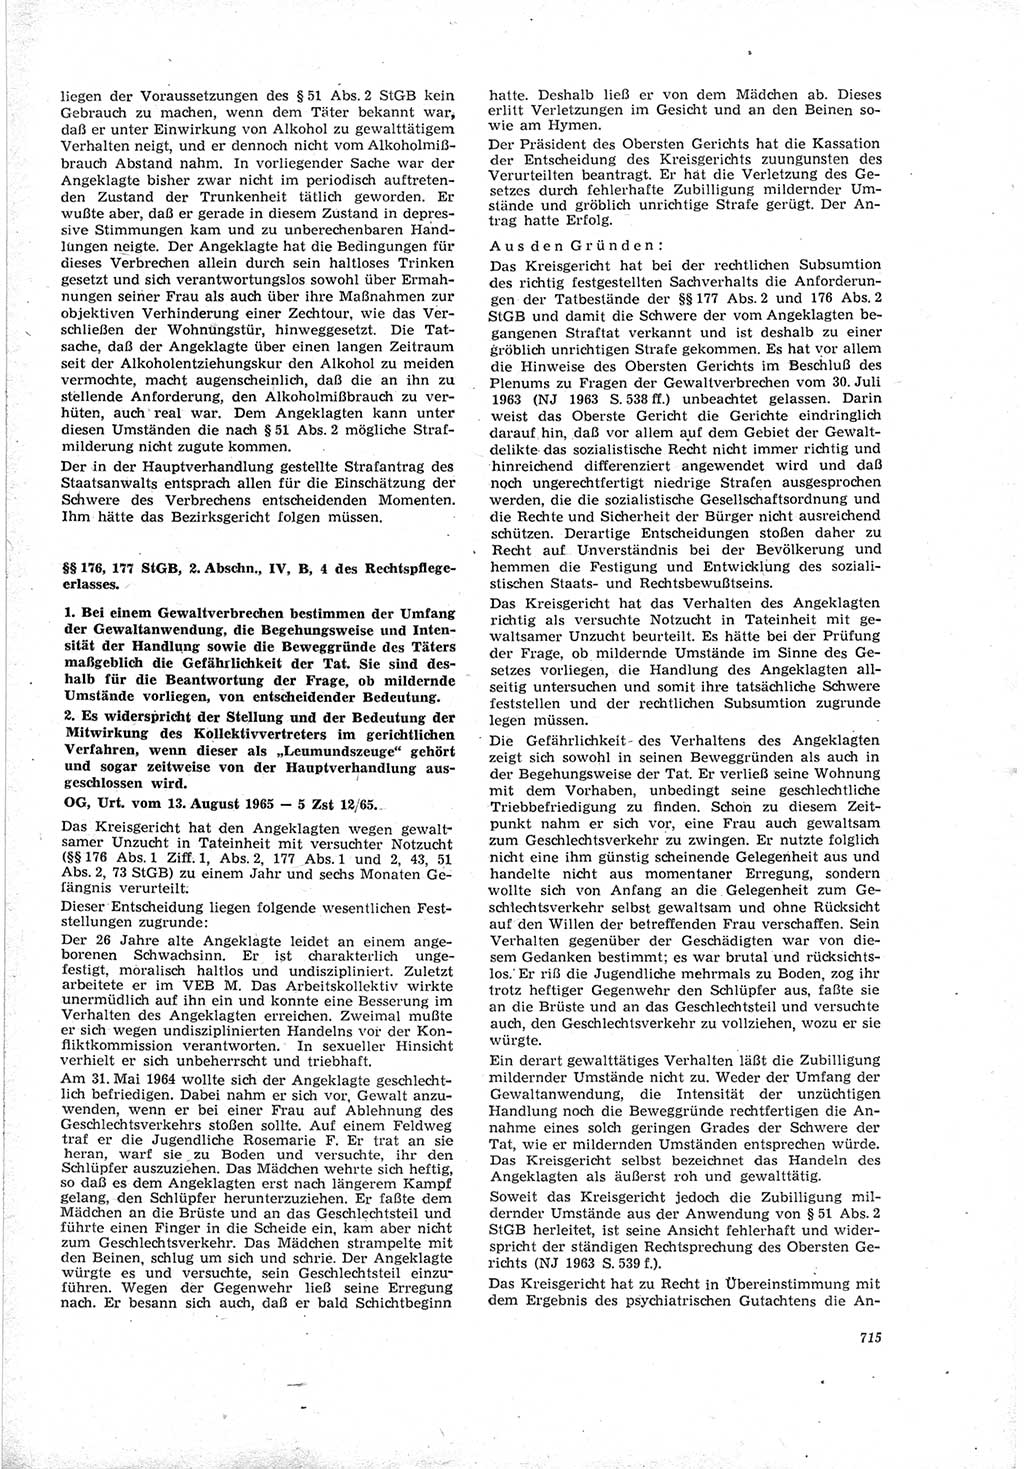 Neue Justiz (NJ), Zeitschrift für Recht und Rechtswissenschaft [Deutsche Demokratische Republik (DDR)], 19. Jahrgang 1965, Seite 715 (NJ DDR 1965, S. 715)